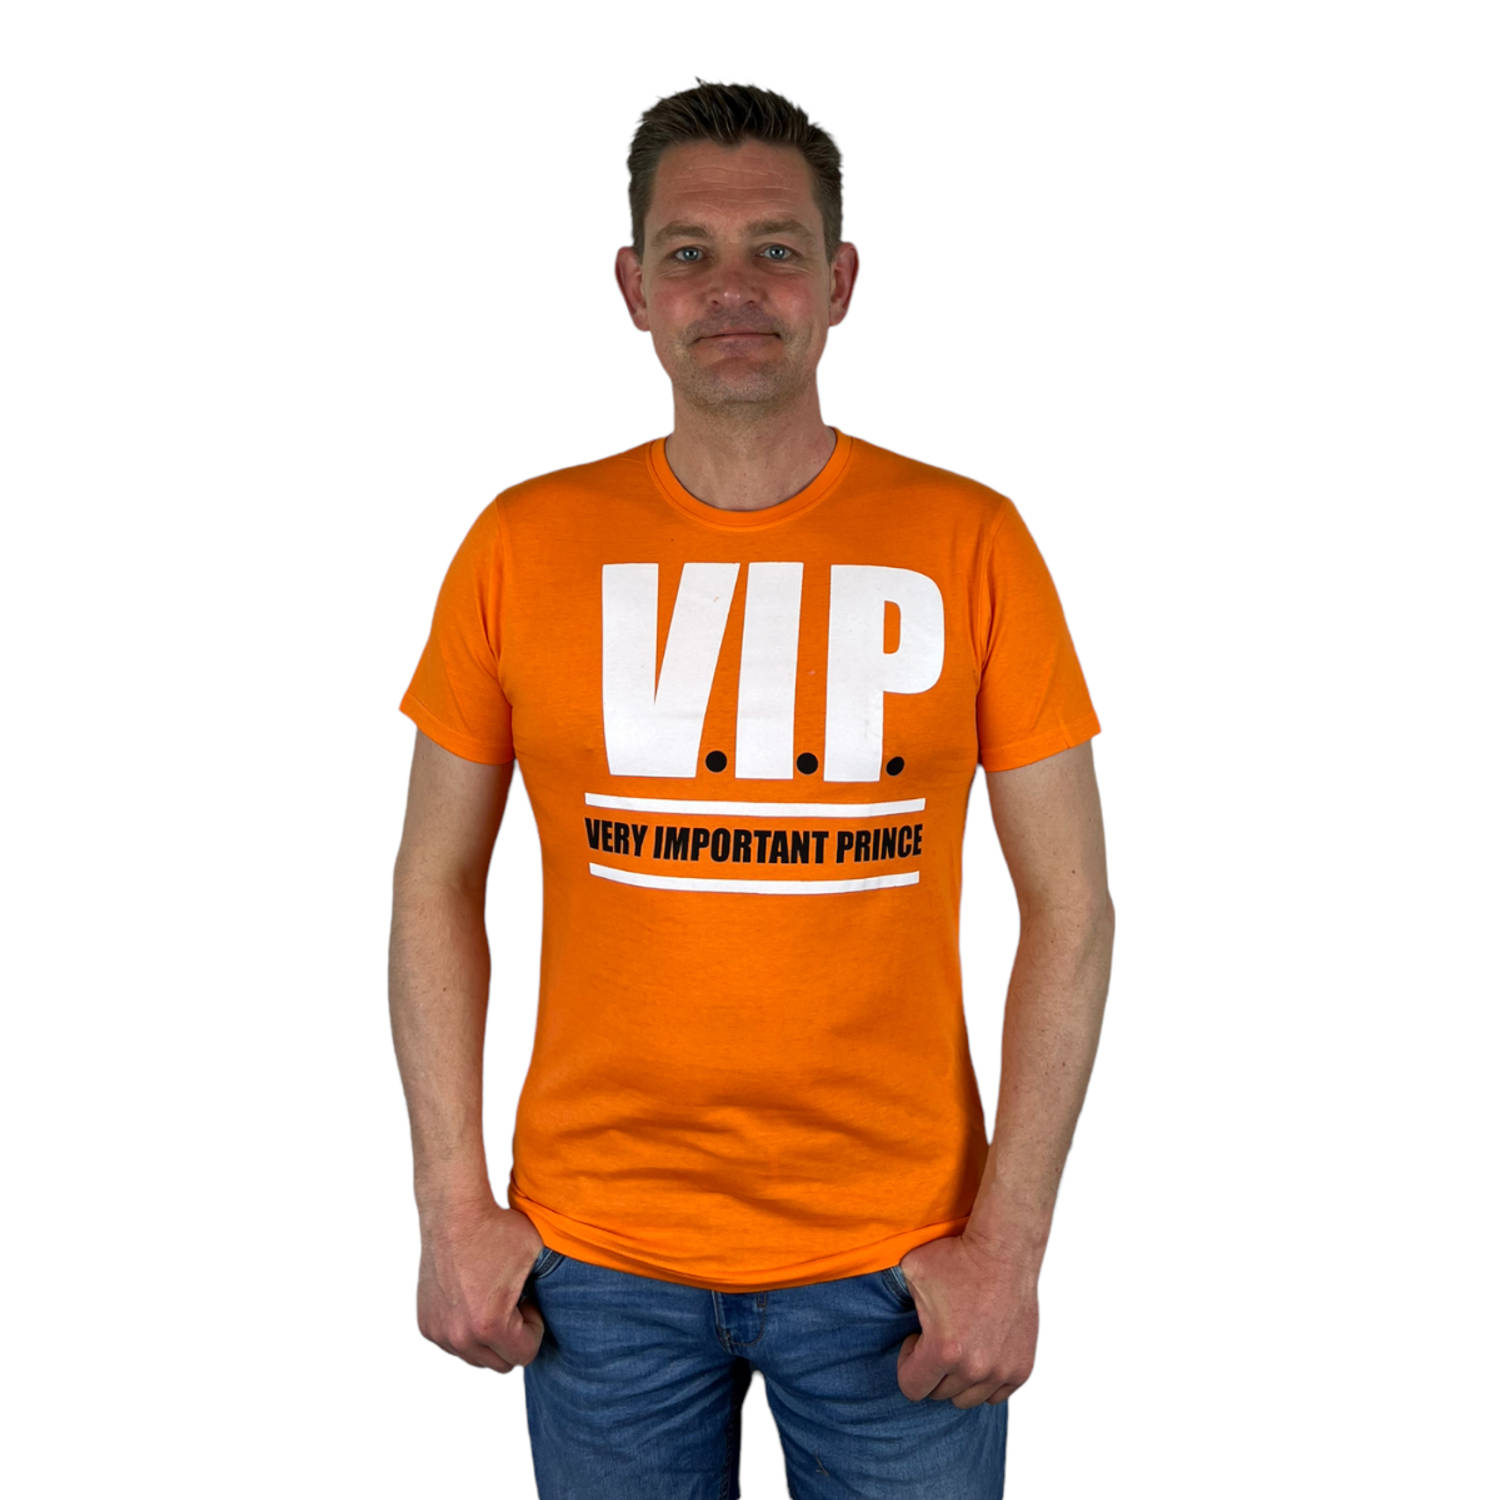 Oranje Heren T-Shirt - V.I.P. Very Important Prince - Voor Koningsdag - Holland - Formule 1 - EK/WK Voetbal - Maat L